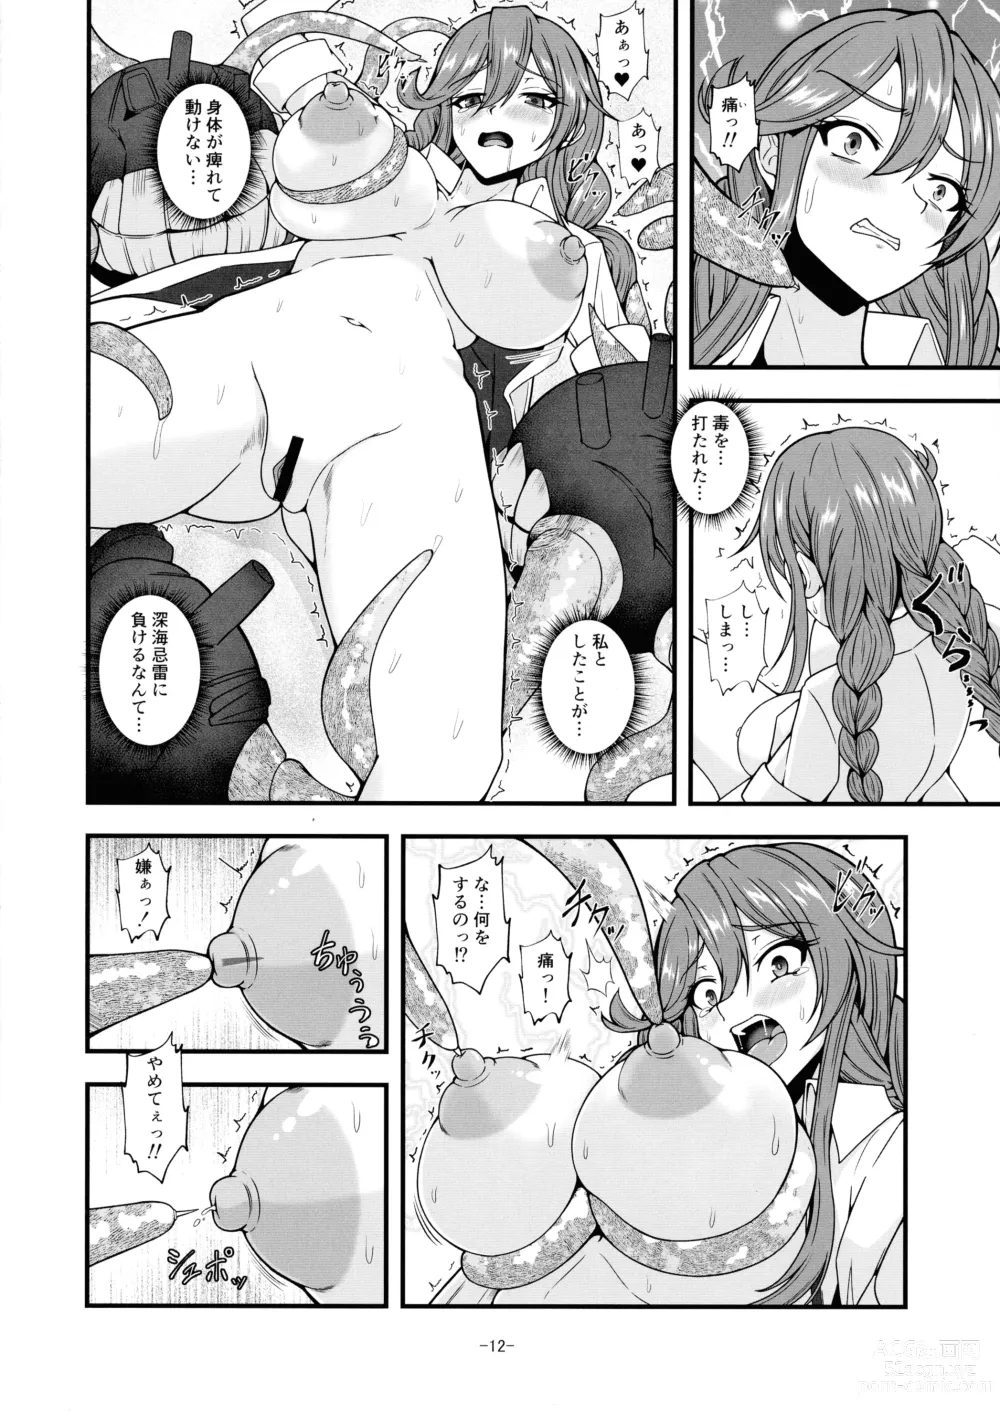 Page 12 of doujinshi Noshiro x Kirai